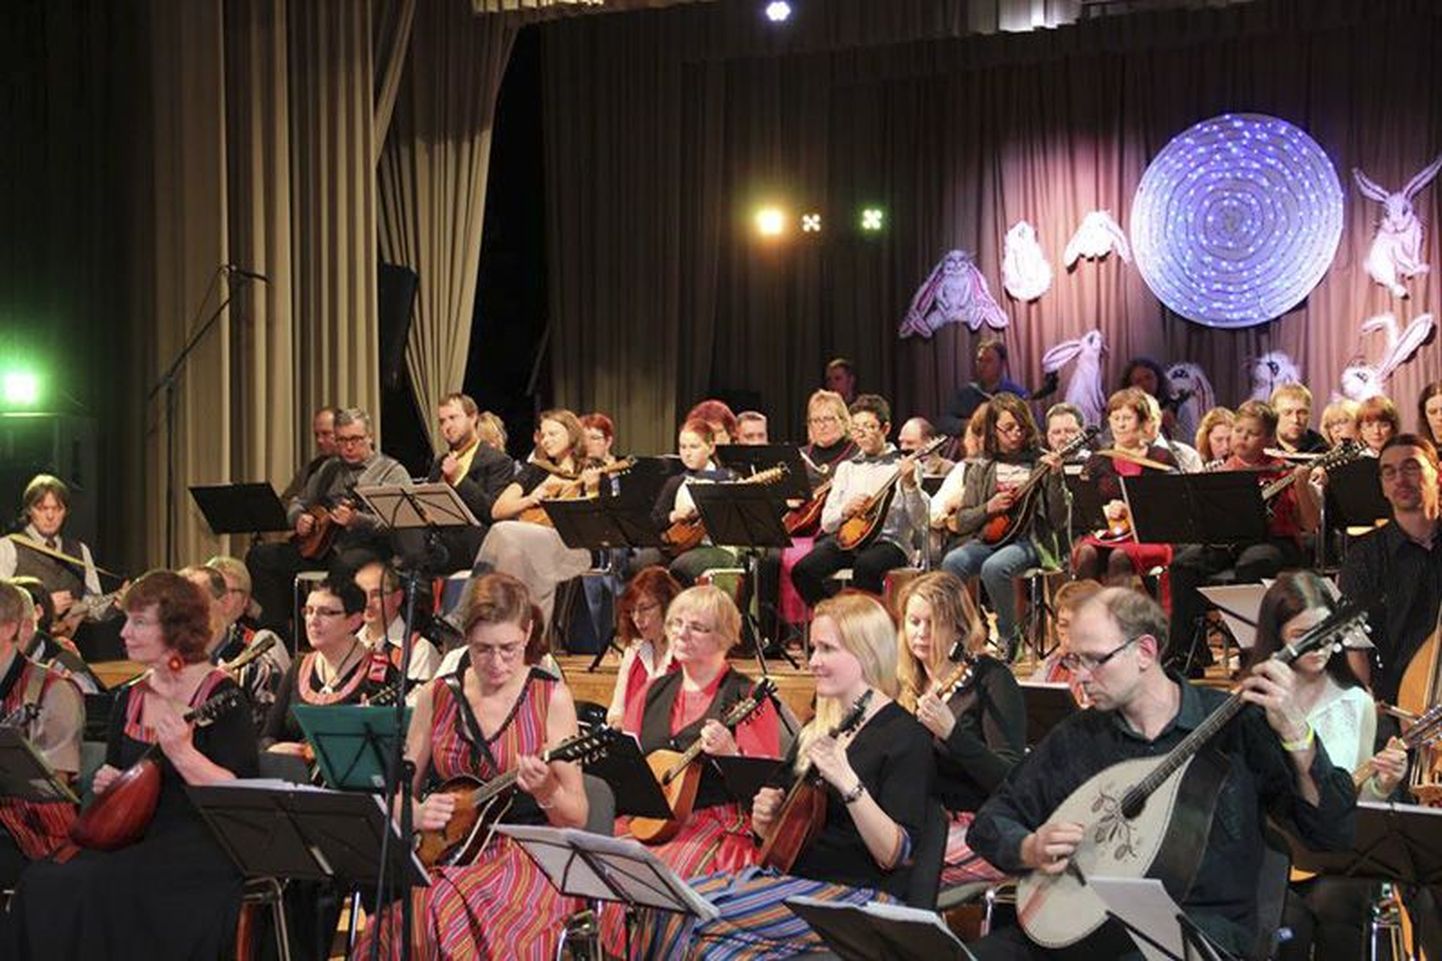 Lehtse kultuurimajas musitseeris korraga üle kaheksakümne mandoliinimängija, neile elas kaasa saalitäis rahvast.